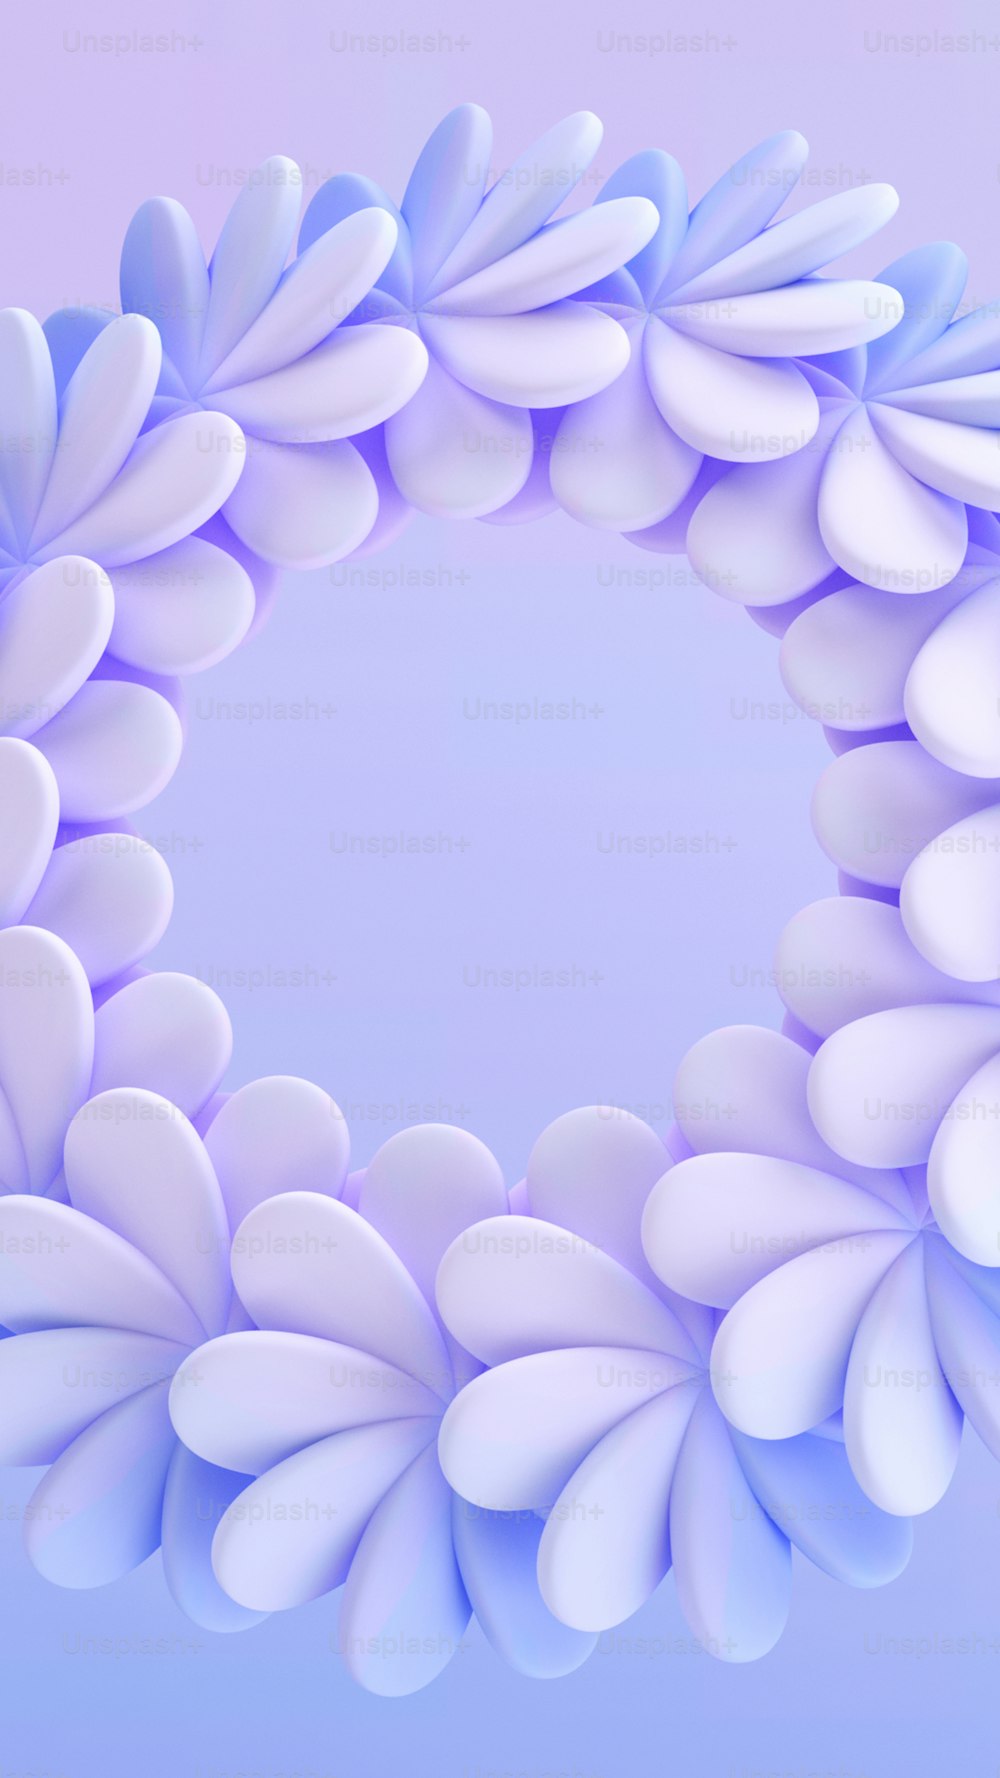 ein blau-weißes kreisförmiges Objekt mit weißen Blütenblättern